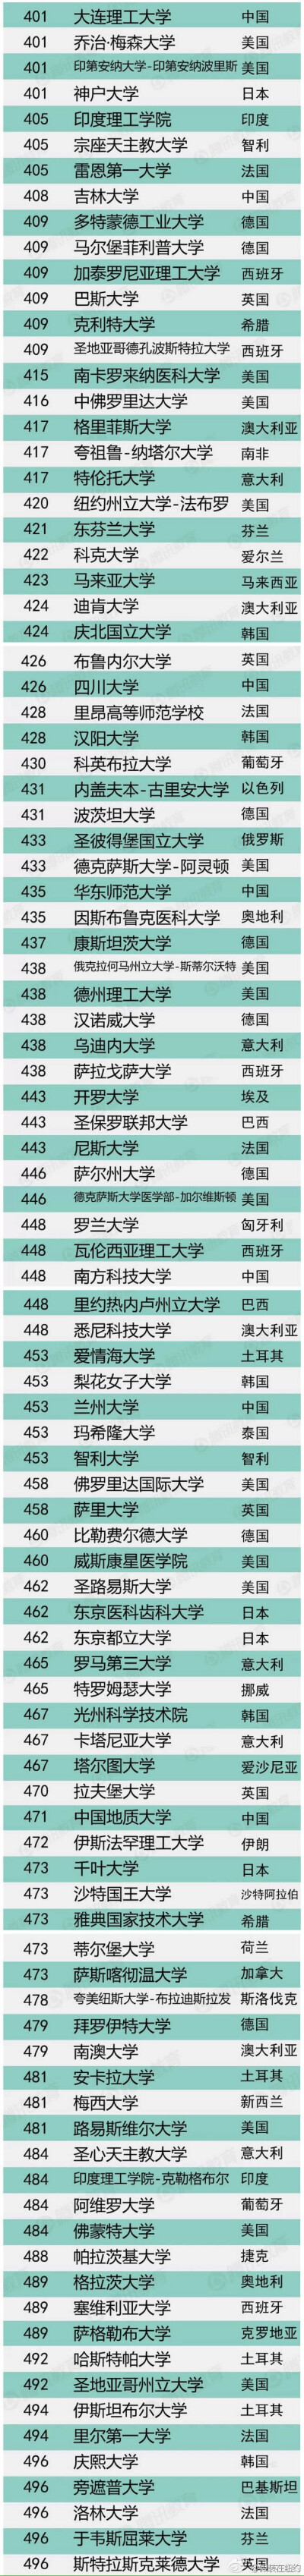 2014年全球前五百大学排名